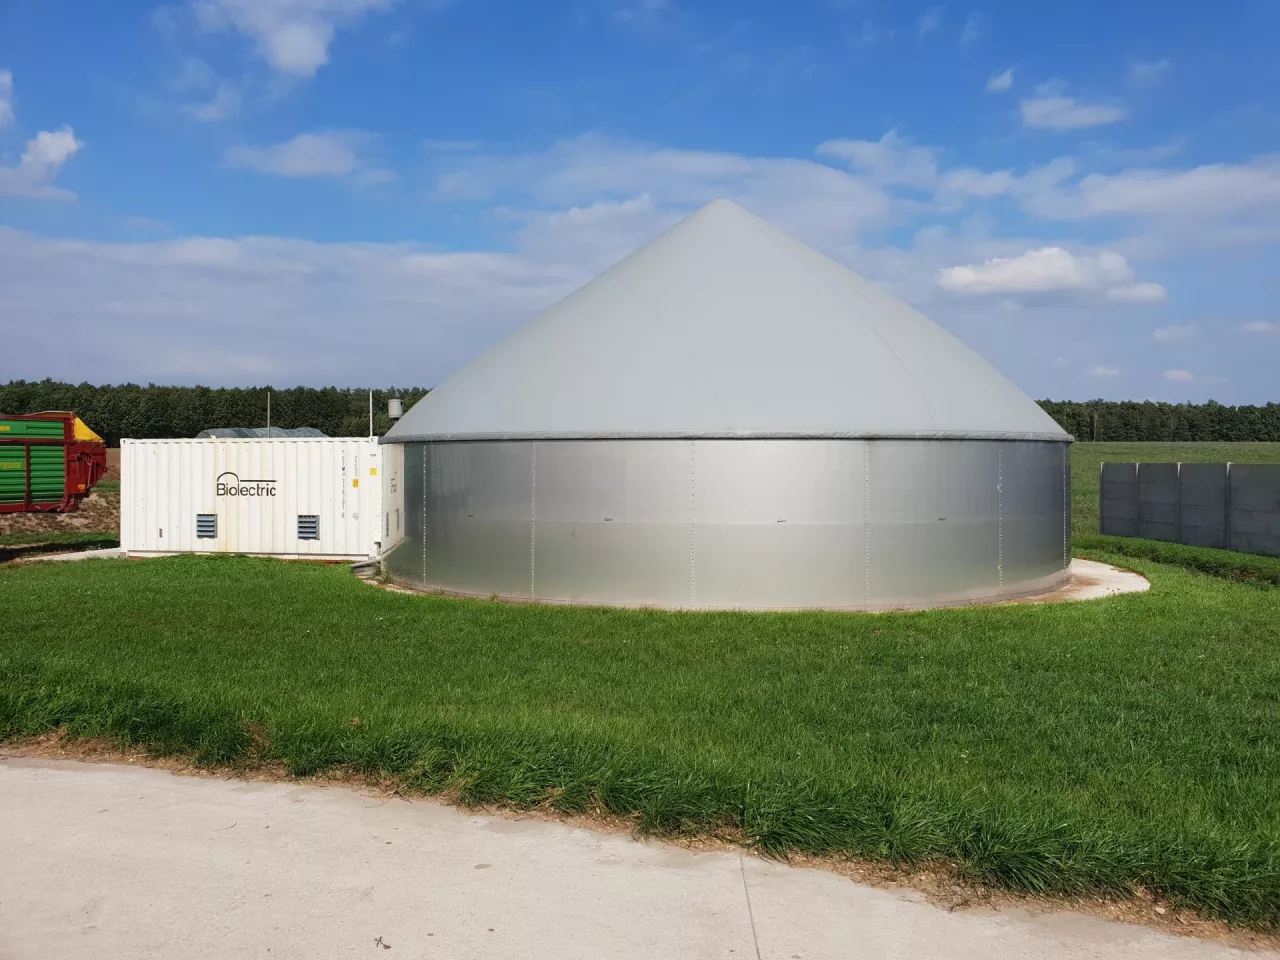 &lt;p&gt;Biogazownia rolnicza Gospodarstwo Rolne Kolonia Łaznów - Biolectric - bydło&lt;/p&gt;